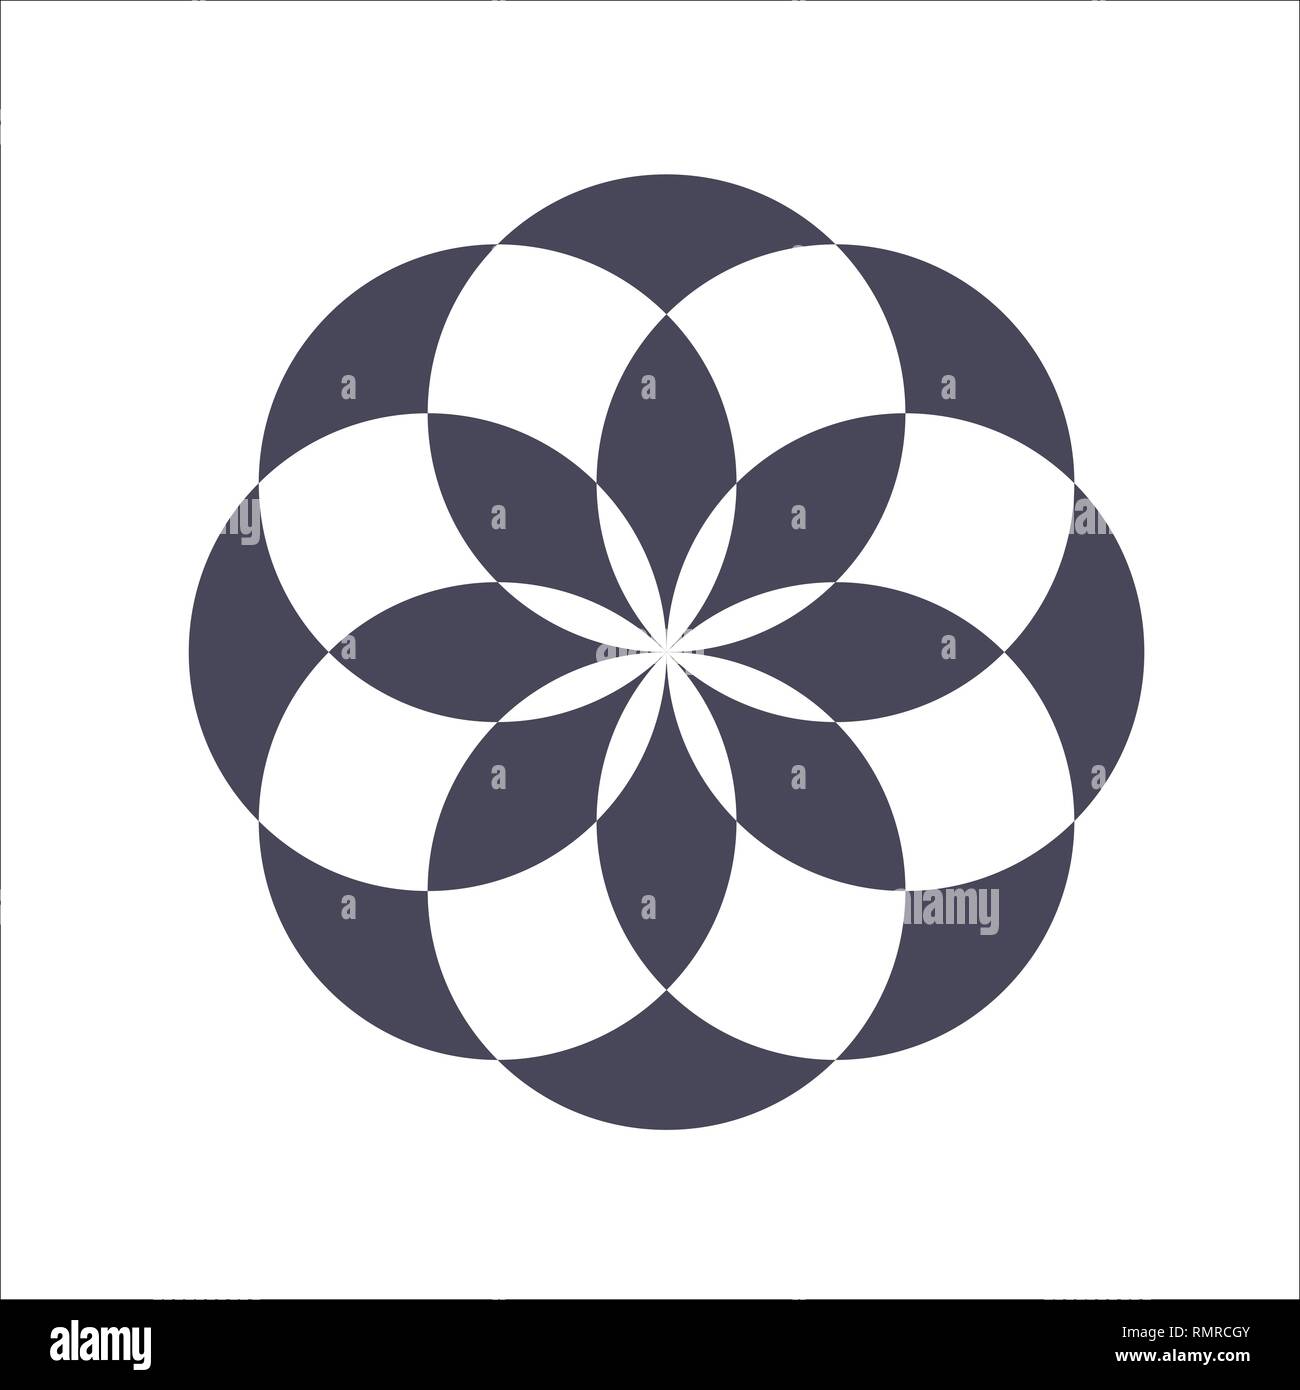 Modèle circulaire élégant monochrome en noir et blanc. Ornement mathématique circulaire. Un vecteur modèle circulaire de la traversé des cercles. Mandala. Illustration de Vecteur